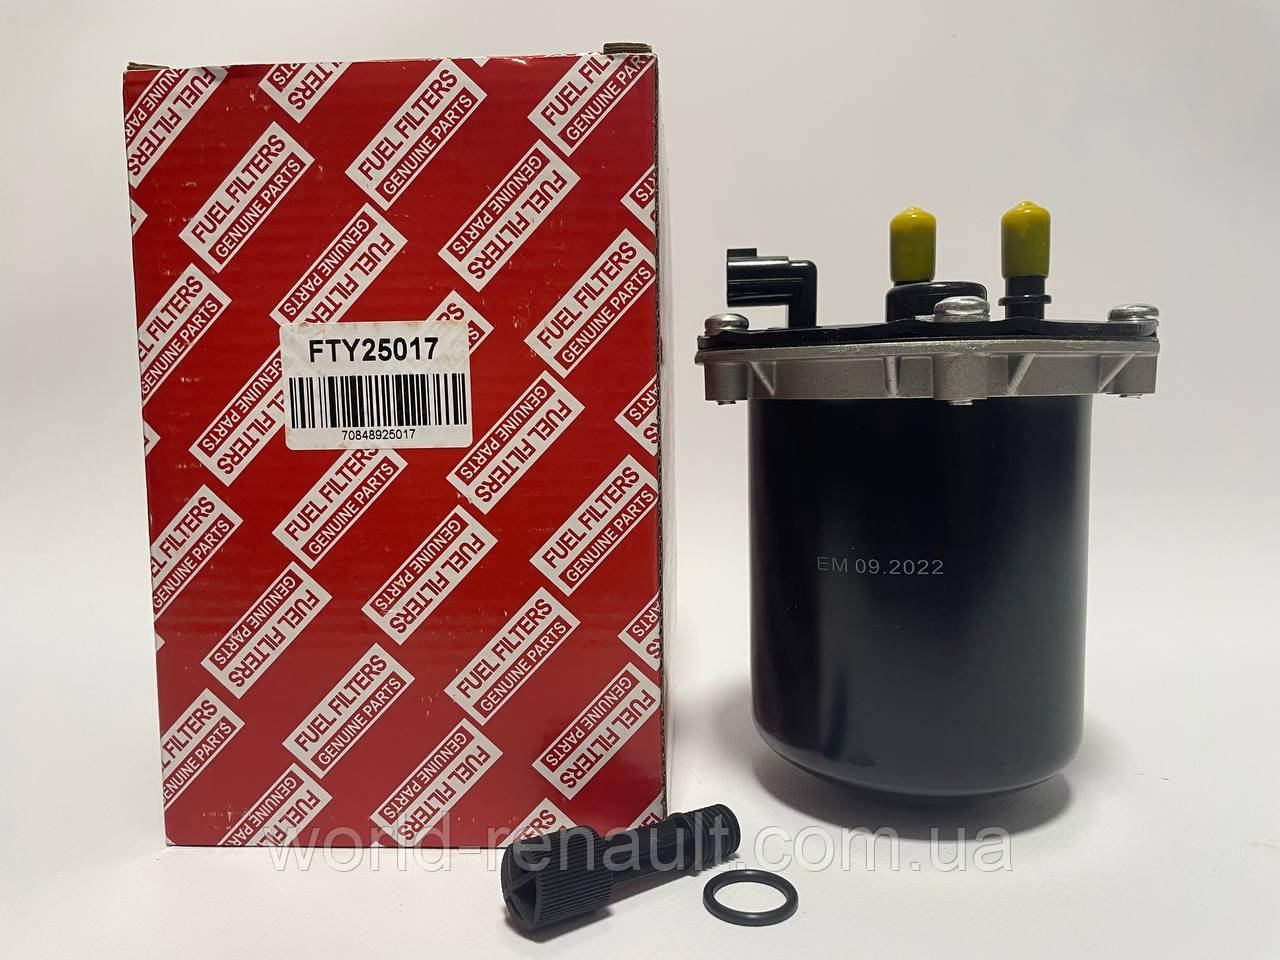 RENZET (Польща) FTY25017 — Паливний фільтр (розбірний) на Рено Дастер 1.5dci